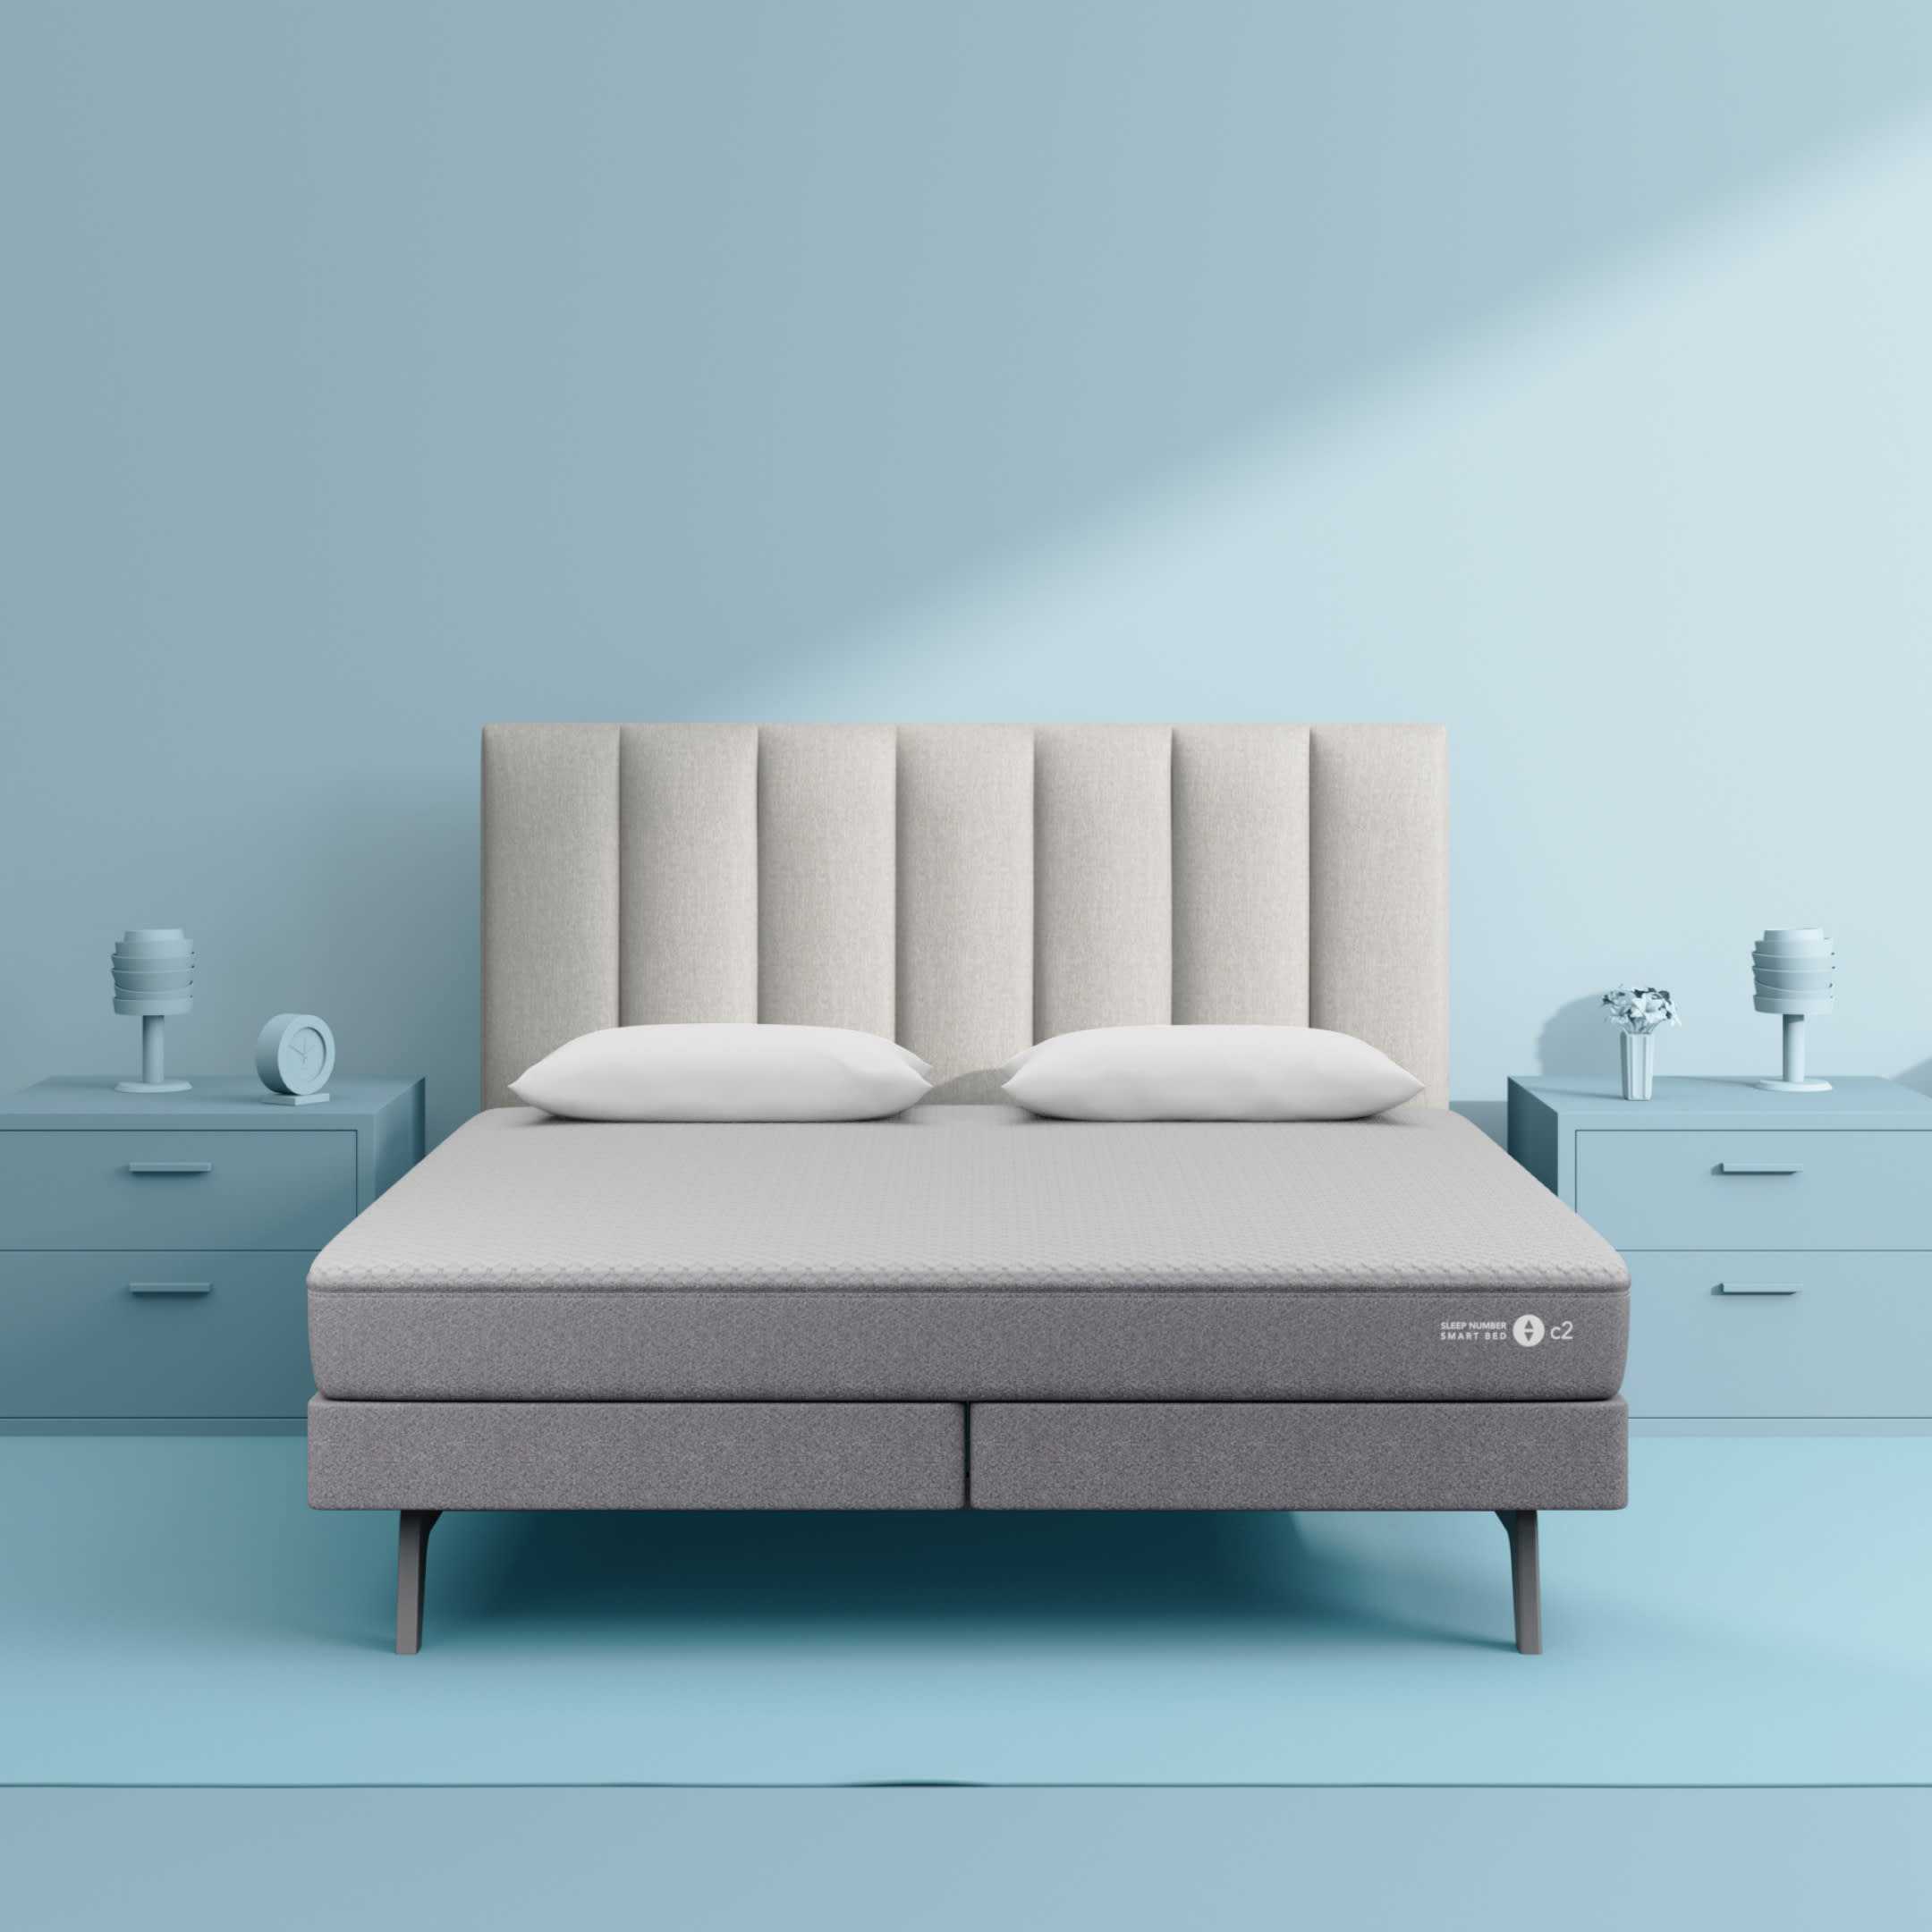 Sleep Number C2 Smart Bed - Queen Mattress Adjustable Firmness